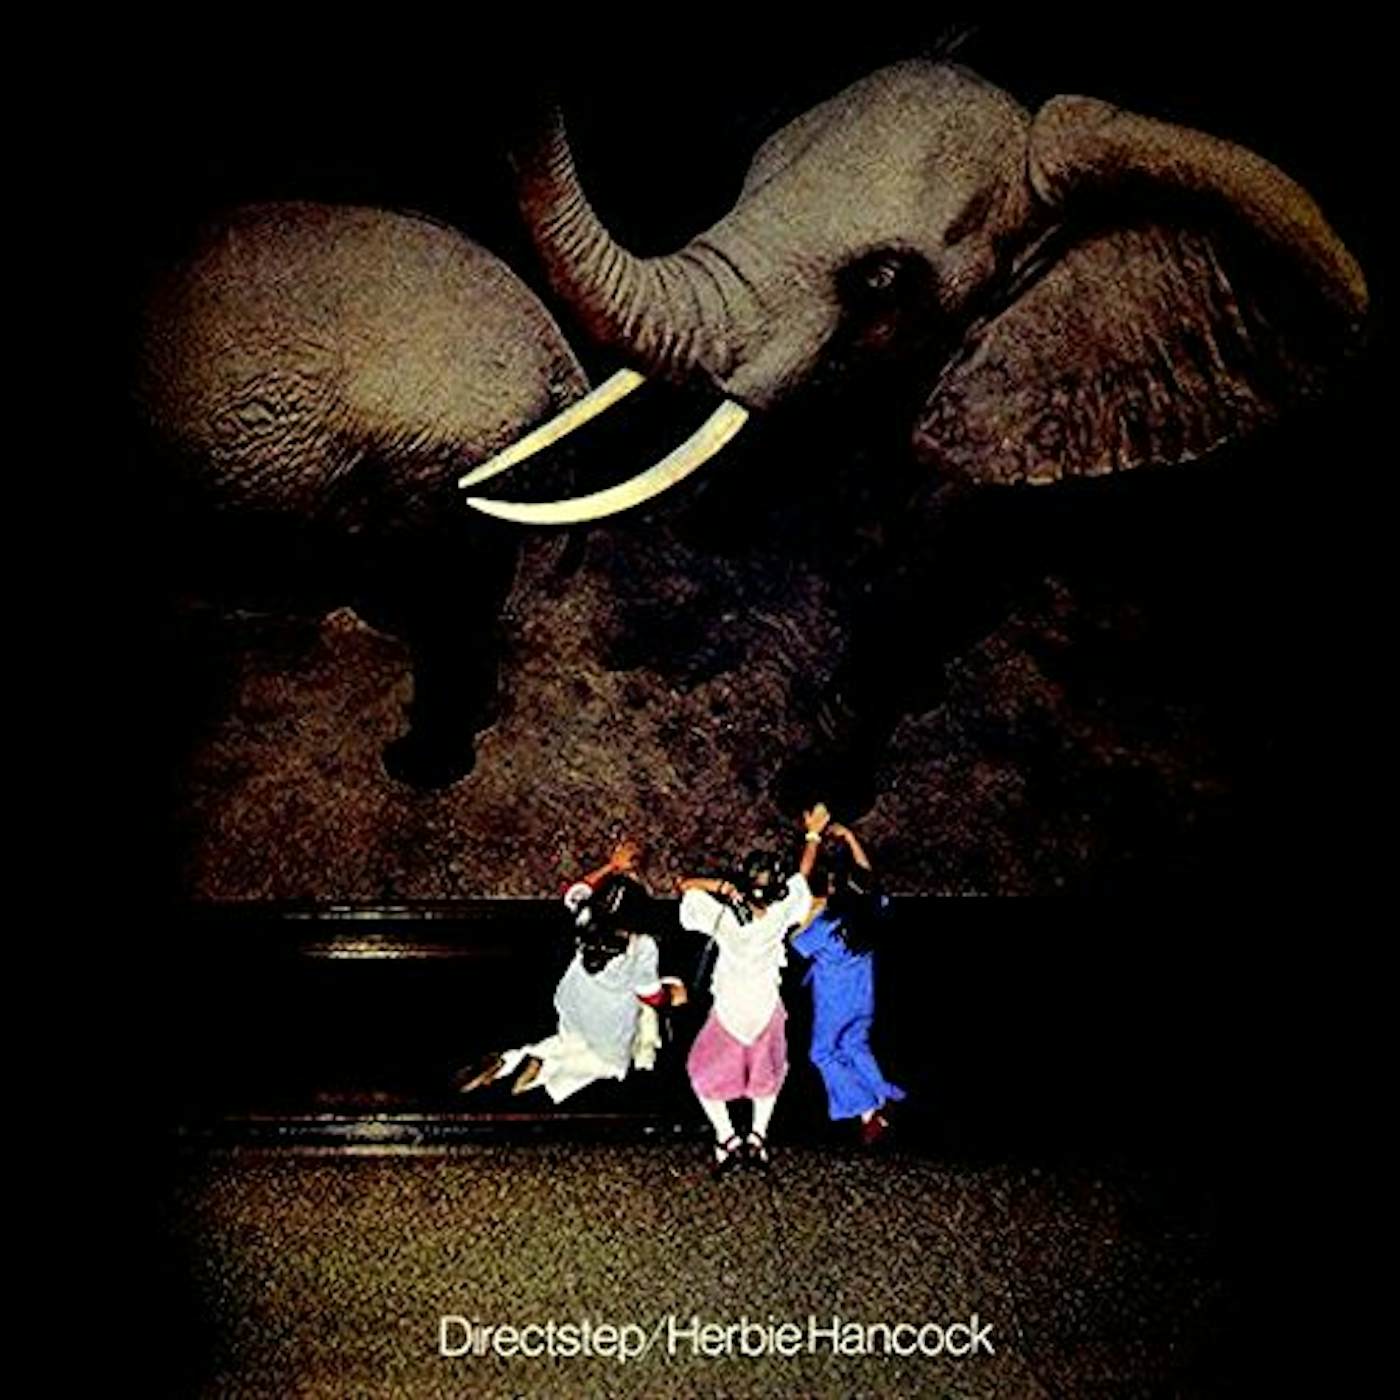 Herbie Hancock DIRECTSTEP CD